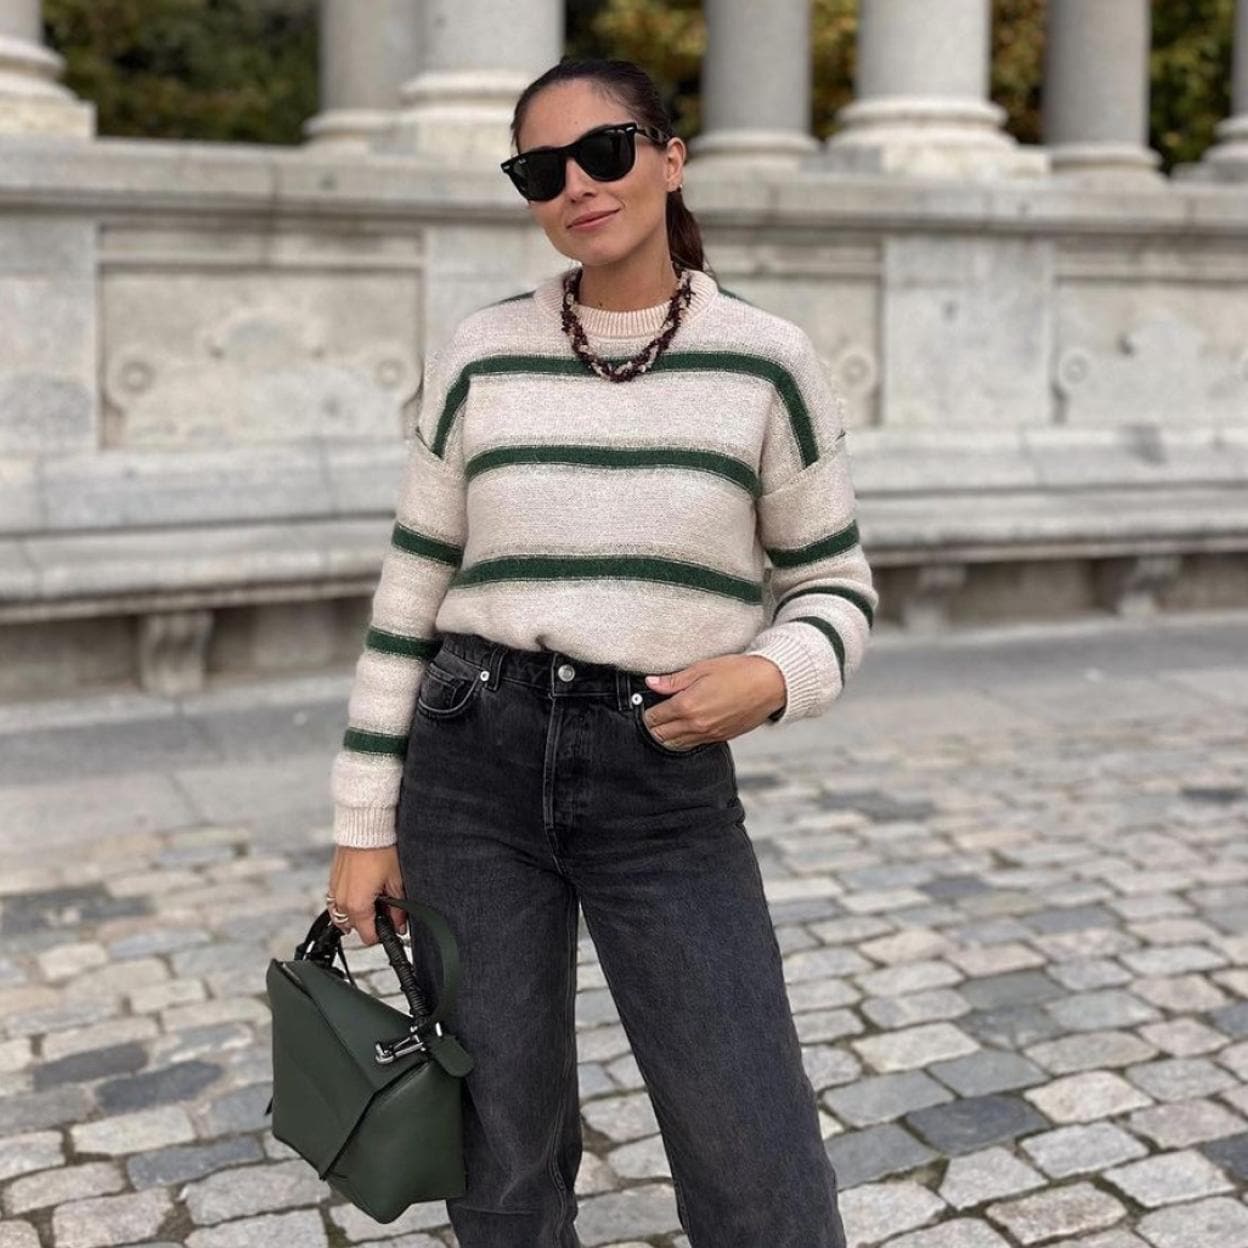 El look con jersey de rayas y zapatillas que arrasa entre las influencers  es el más fácil de copiar | Mujer Hoy